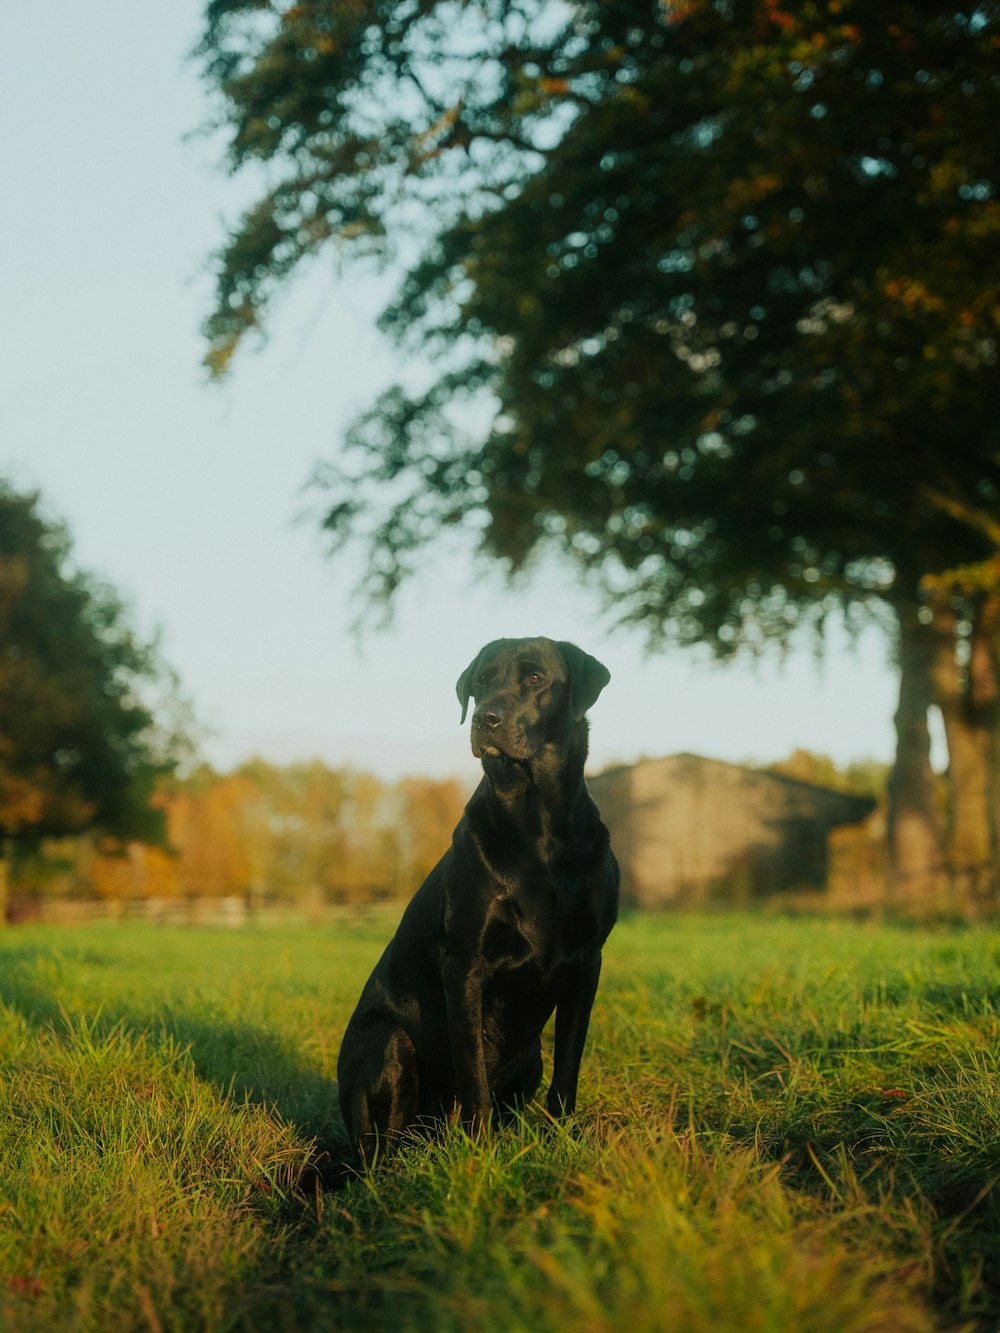 a black dog sitting in a grassy field